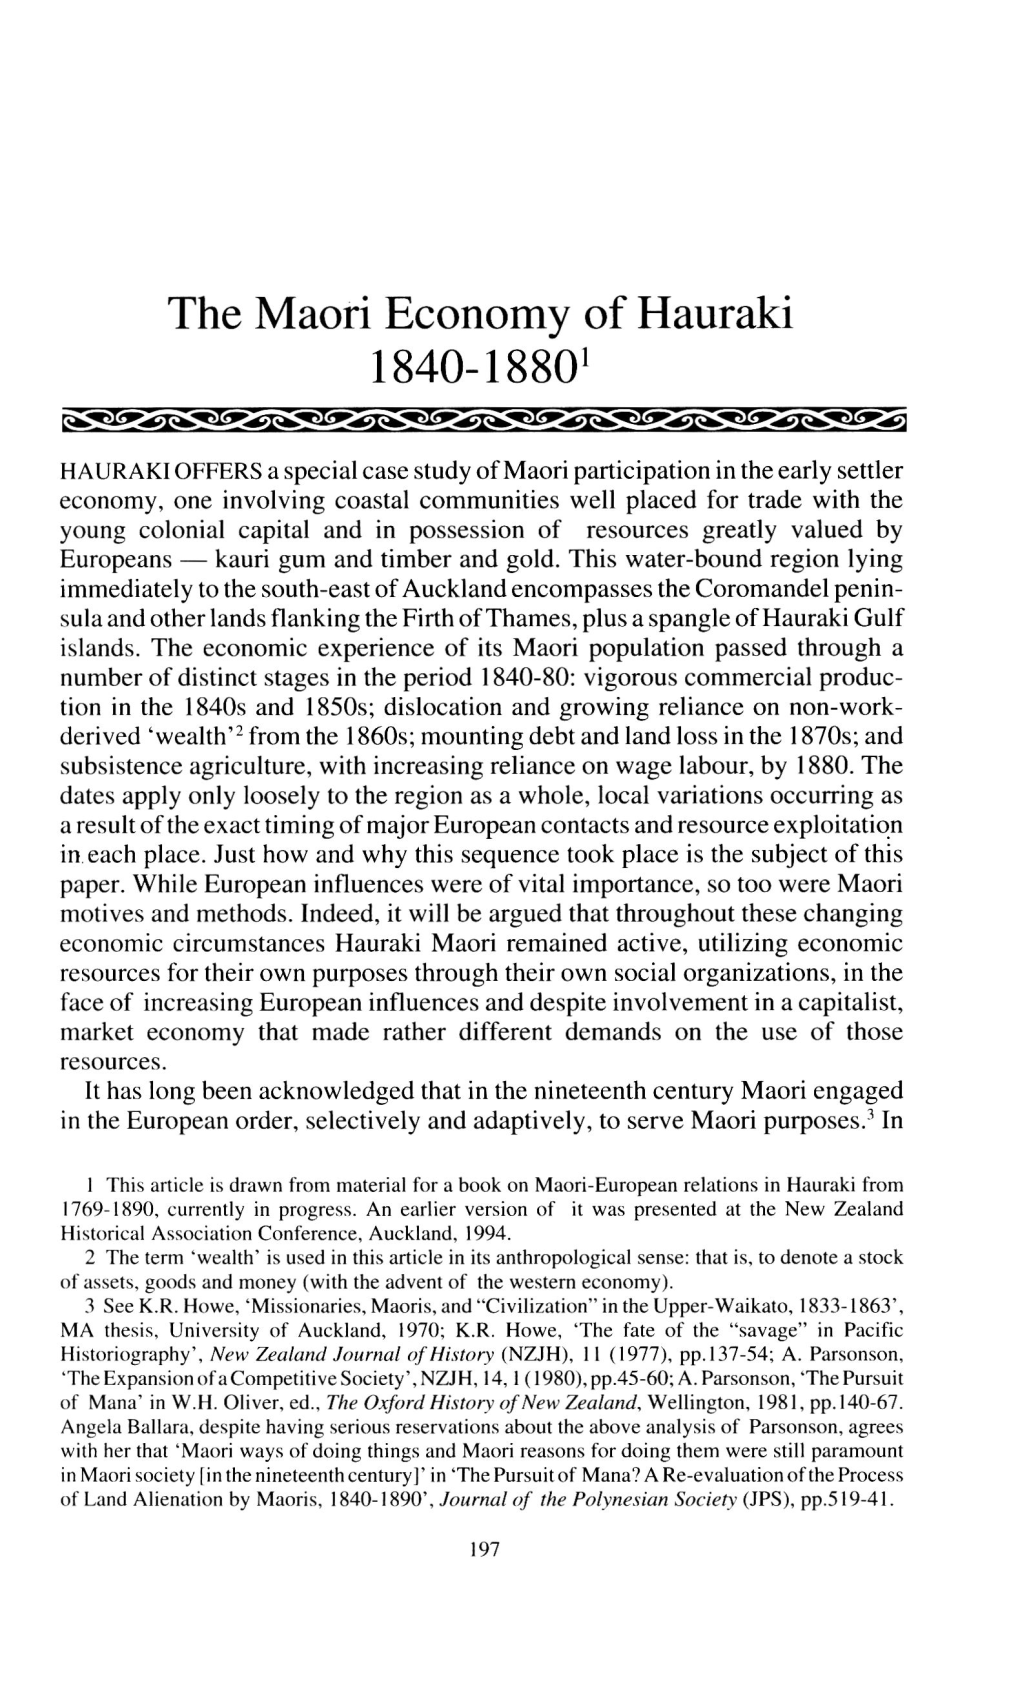 The Maori Economy of Hauraki 1840-1880'